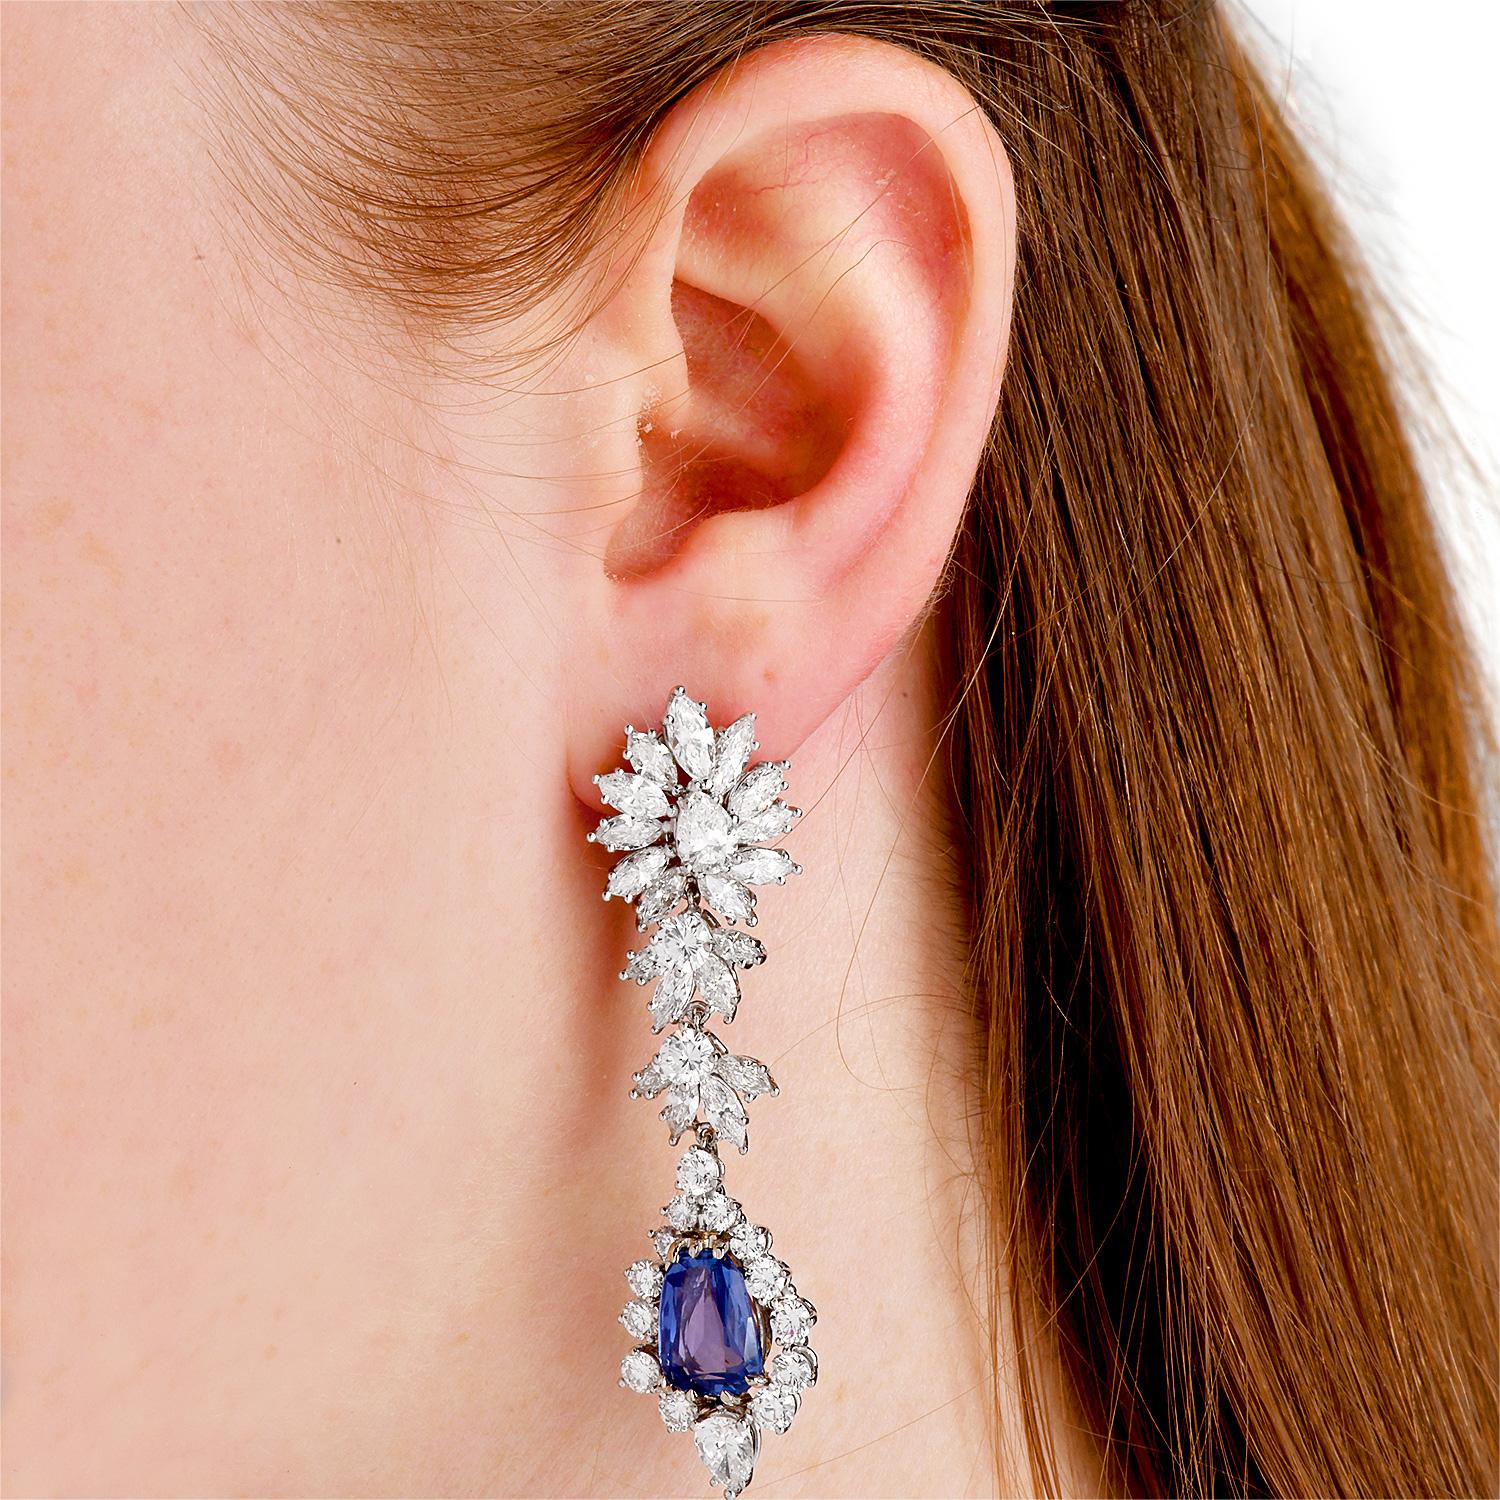 iese wunderschönen Estate Diamond No-Heat Ceylon Sapphire Platinum Ohrringe! 

Sie zeigen zwei hellen echten blauen Saphiren, Ceylon Herkunft ohne Behandlungen (No Heat), verjüngte Kissen-Schliff, Zacken gesetzt, etwa 8,27 insgesamt (ein 4,12 Karat